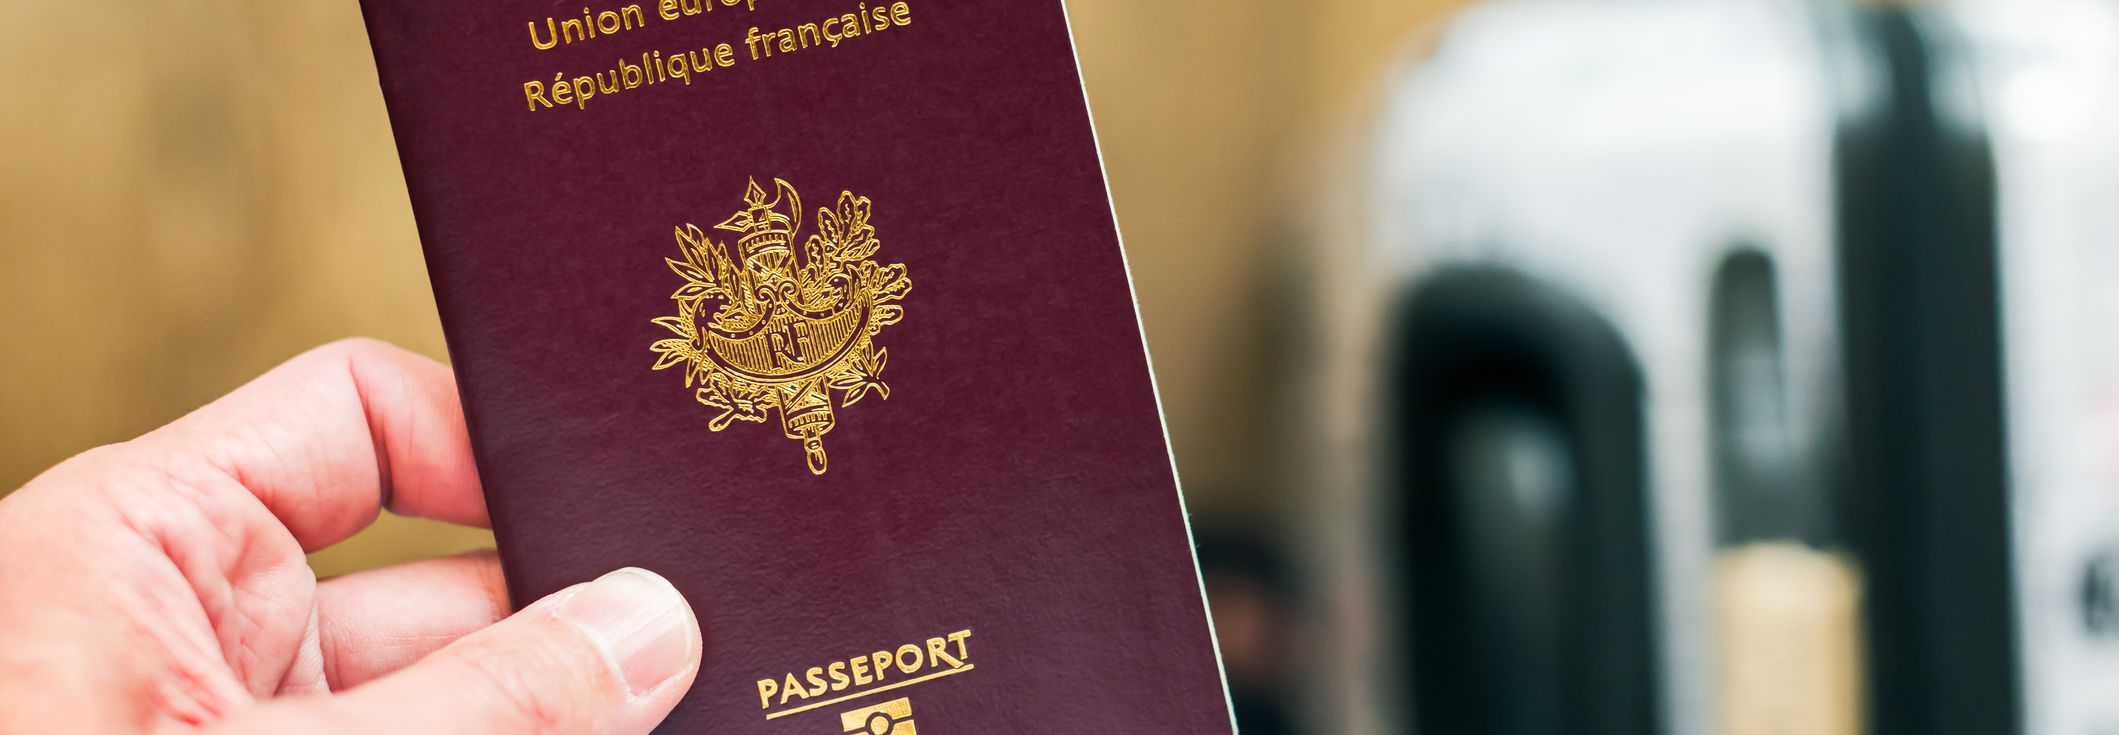 LockBit divulgue 8 000 passeports français